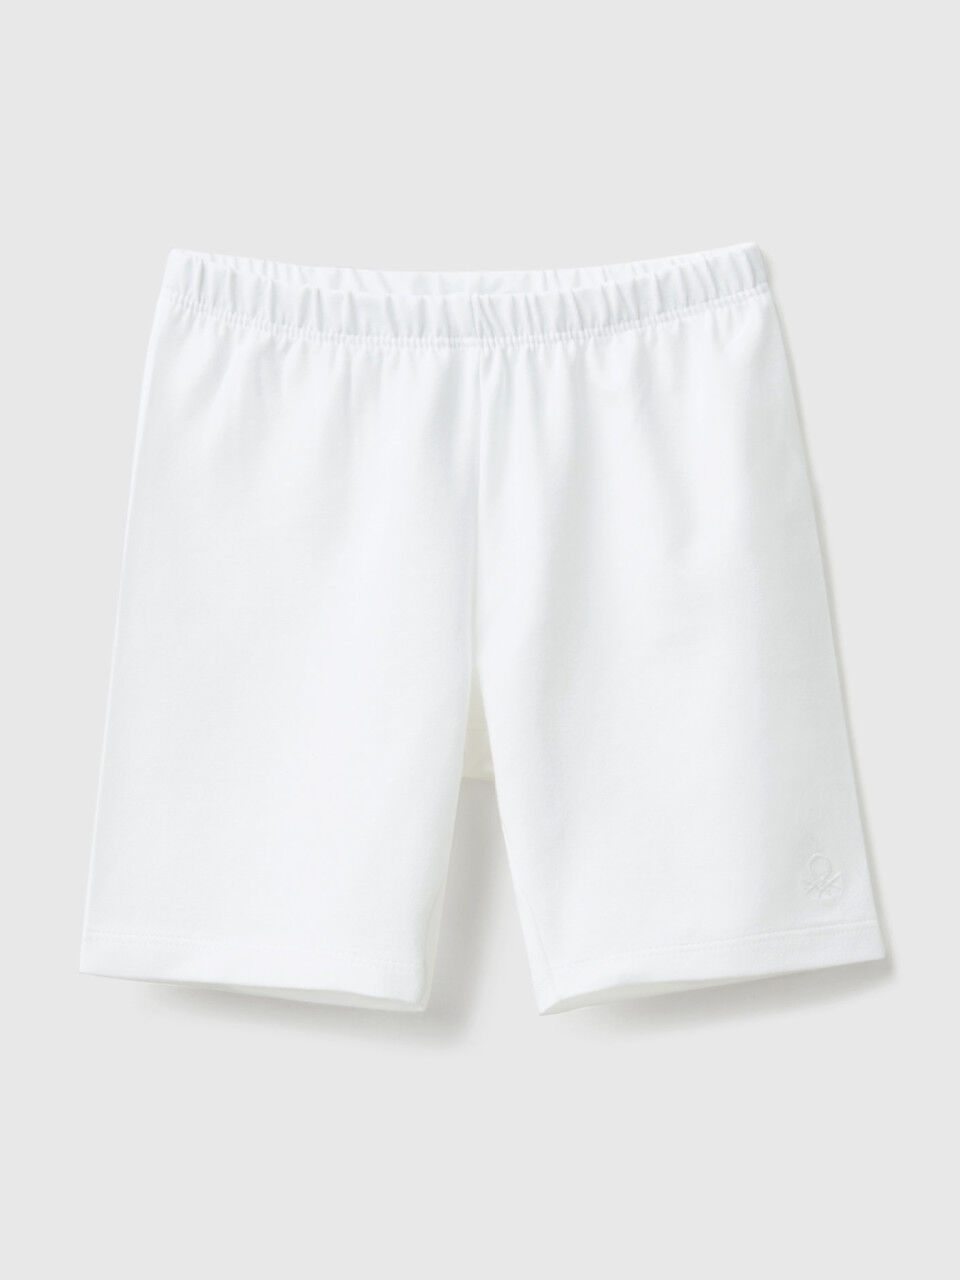 Girls Kids Child Safety PantsUnderwear Stretch Leggings Short Panties 3-14  Year♡ | eBay